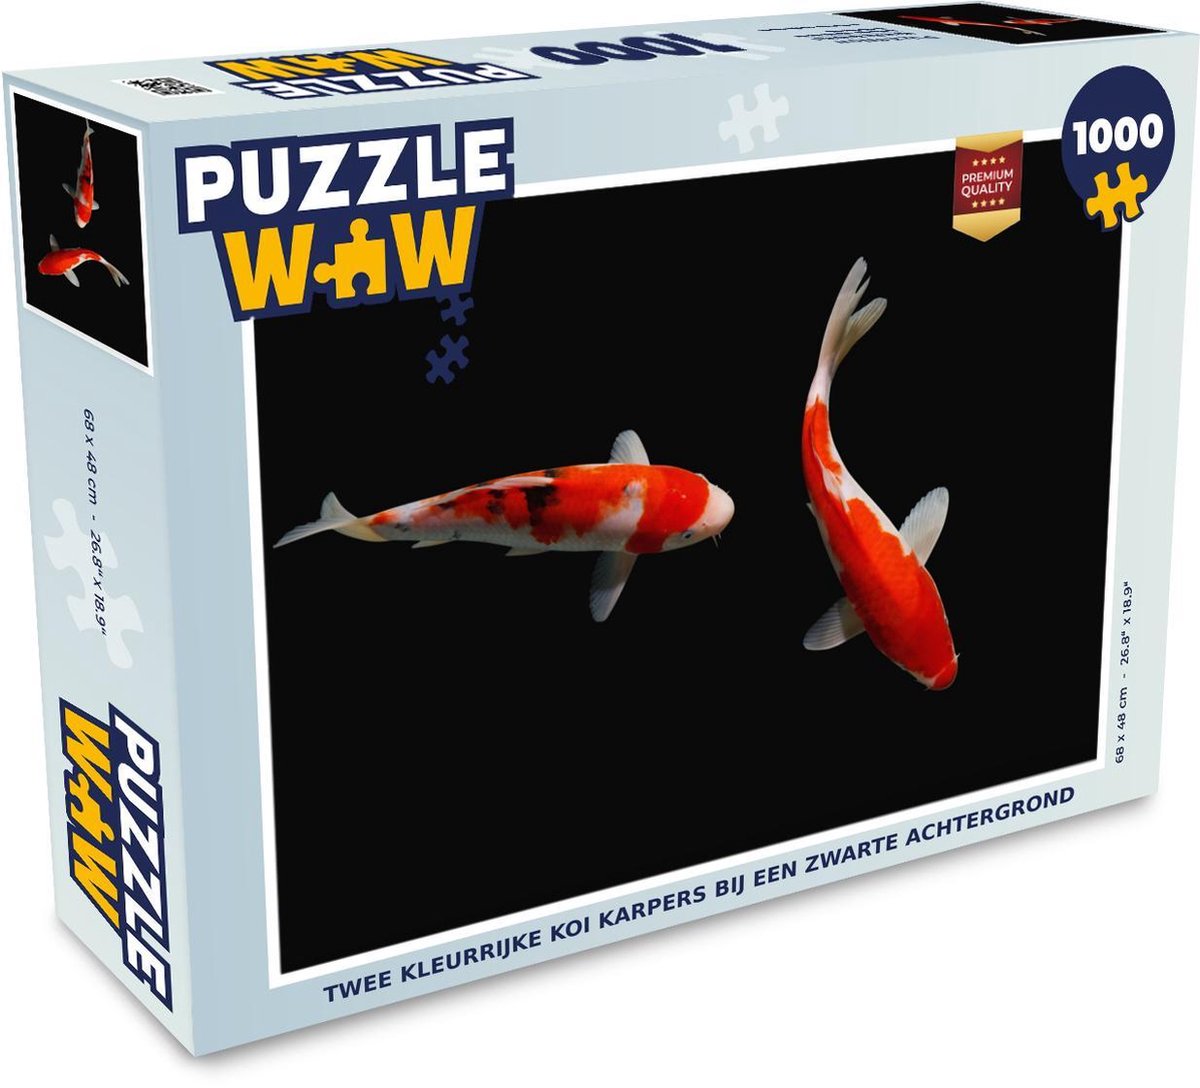 Afbeelding van product Puzzel 1000 stukjes volwassenen Koi karpers 1000 stukjes - Twee kleurrijke koi karpers bij een zwarte achtergrond - PuzzleWow heeft +100000 puzzels